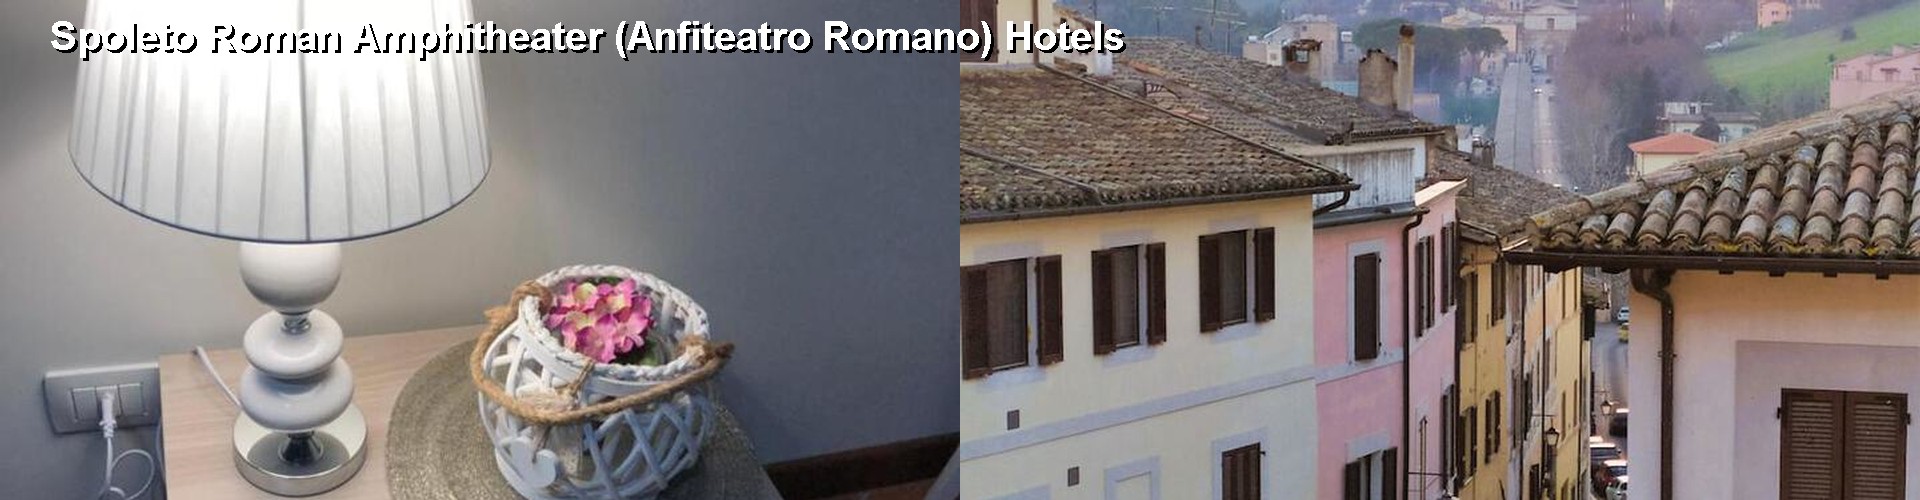 5 Best Hotels near Spoleto Roman Amphitheater (Anfiteatro Romano)